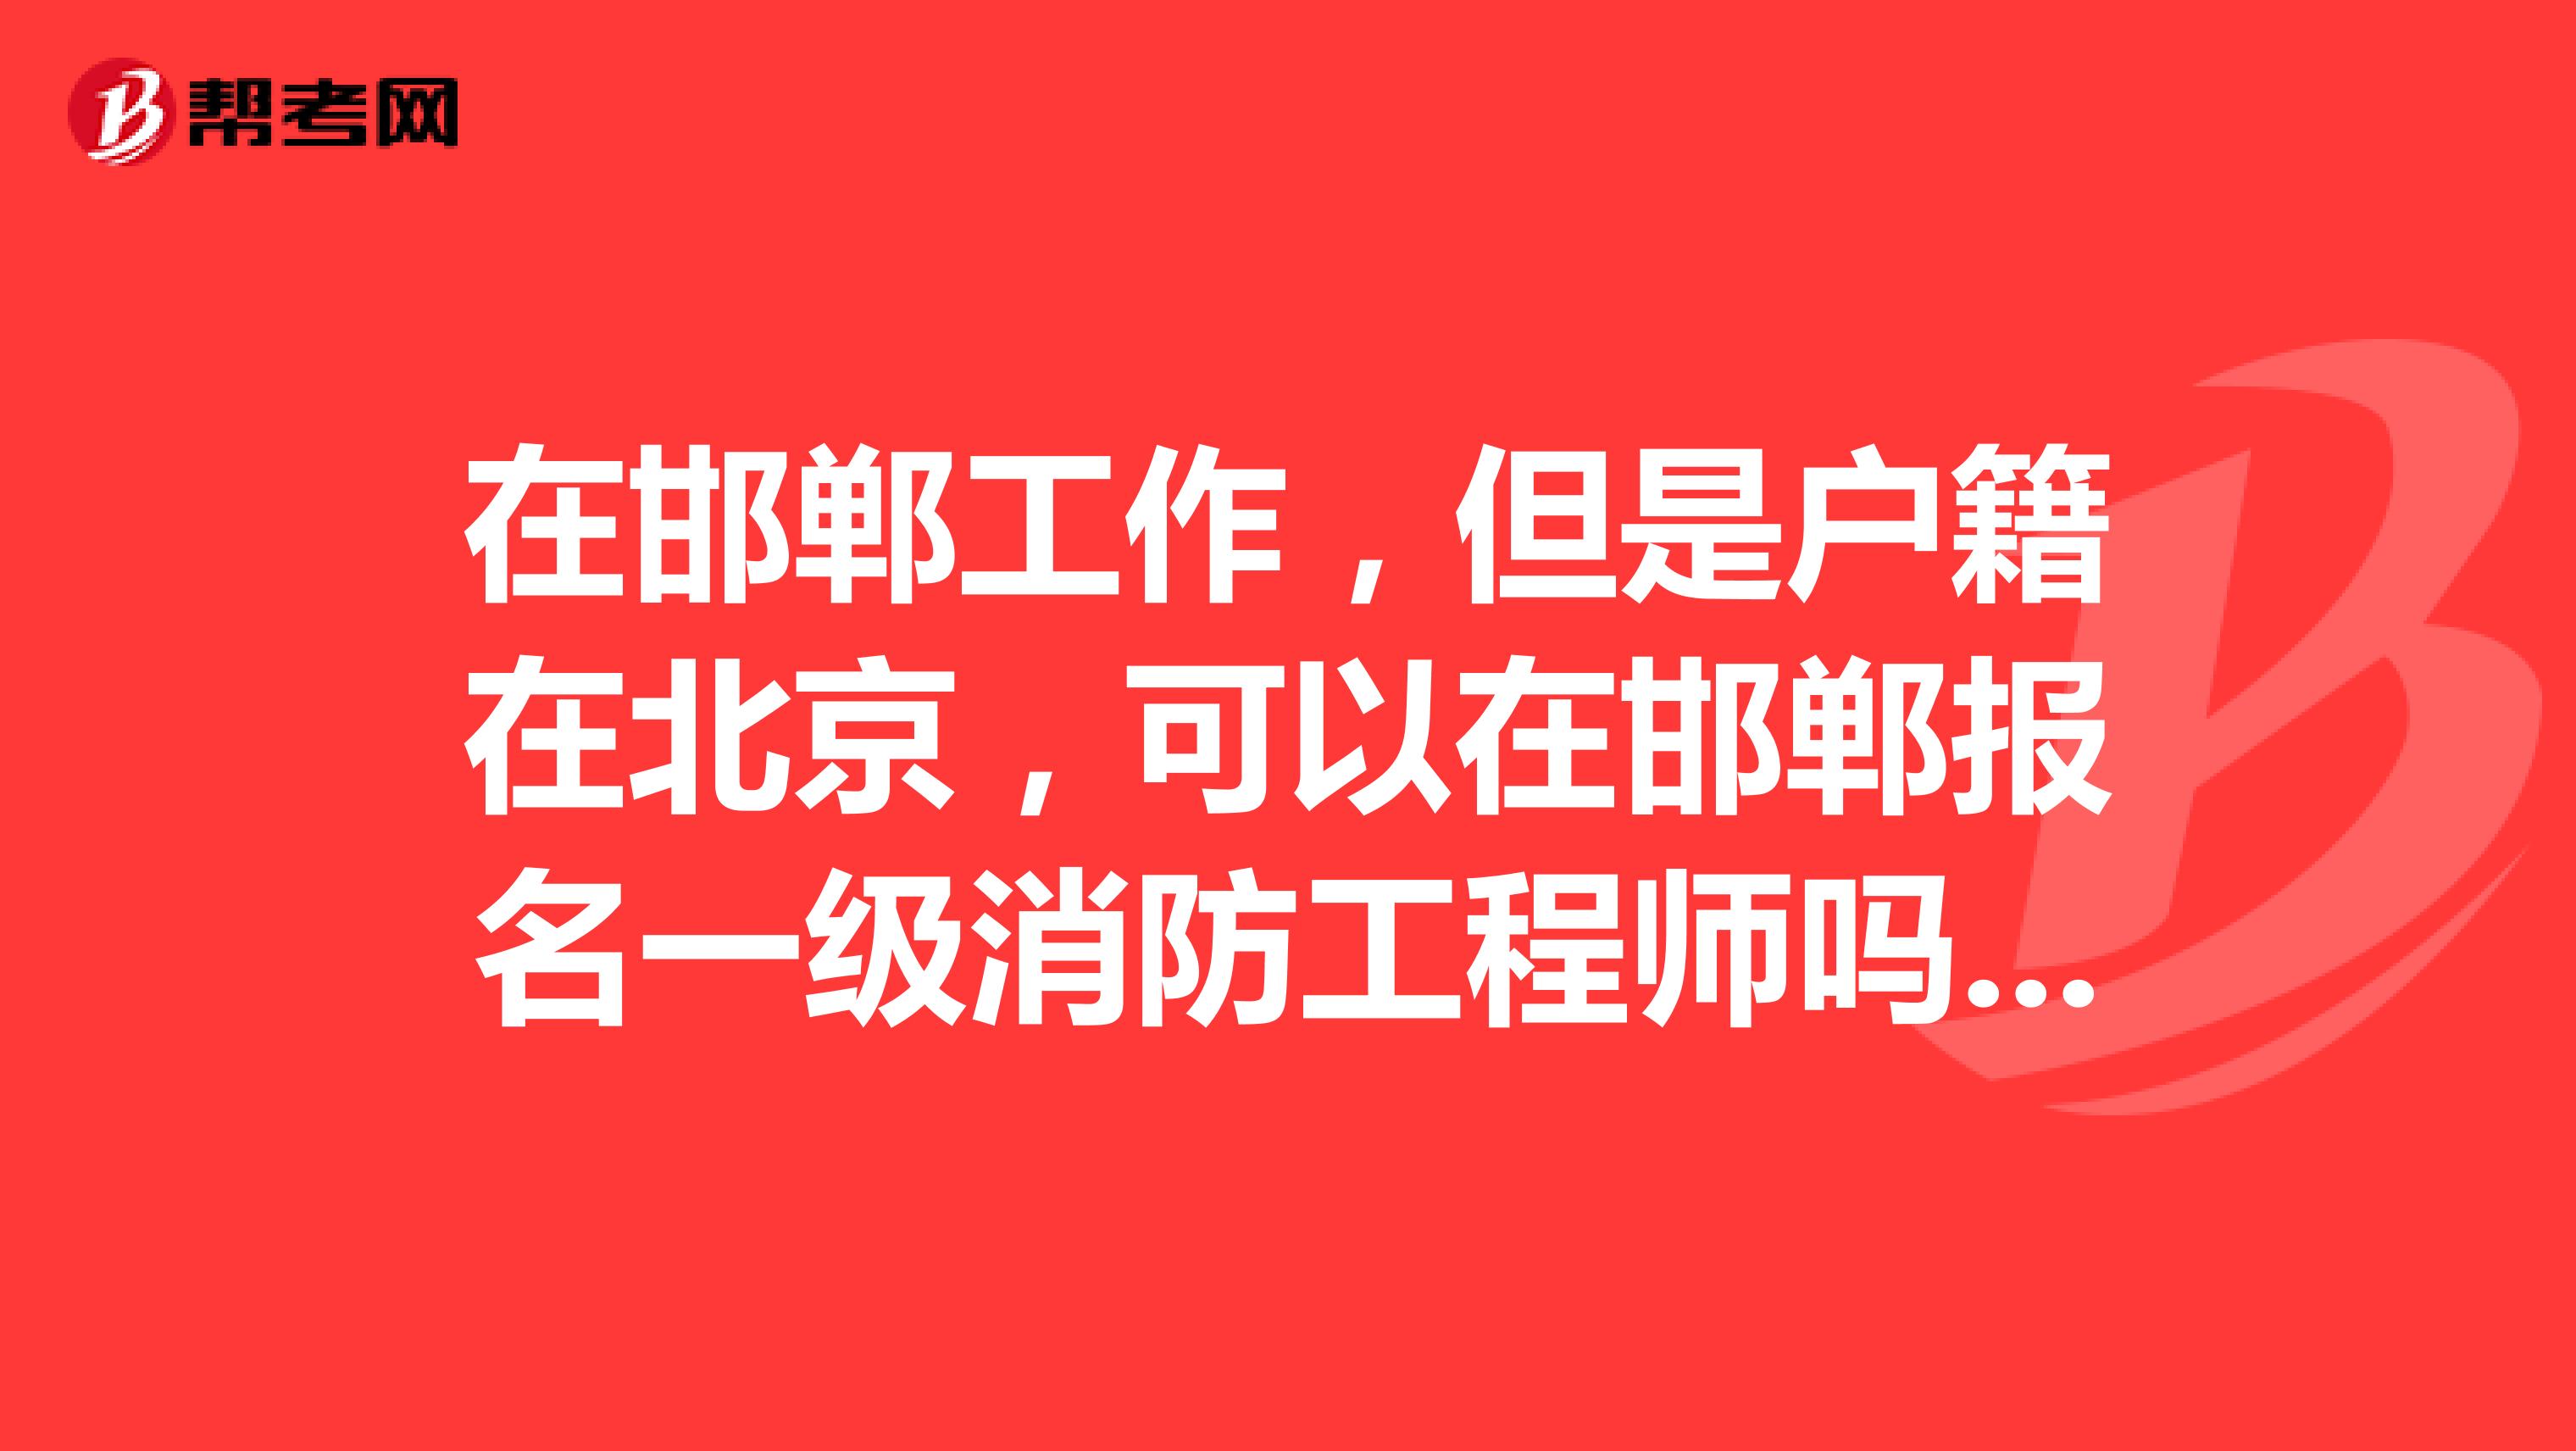 在邯郸工作，但是户籍在北京，可以在邯郸报名一级消防工程师吗？还说要回到北京报名？